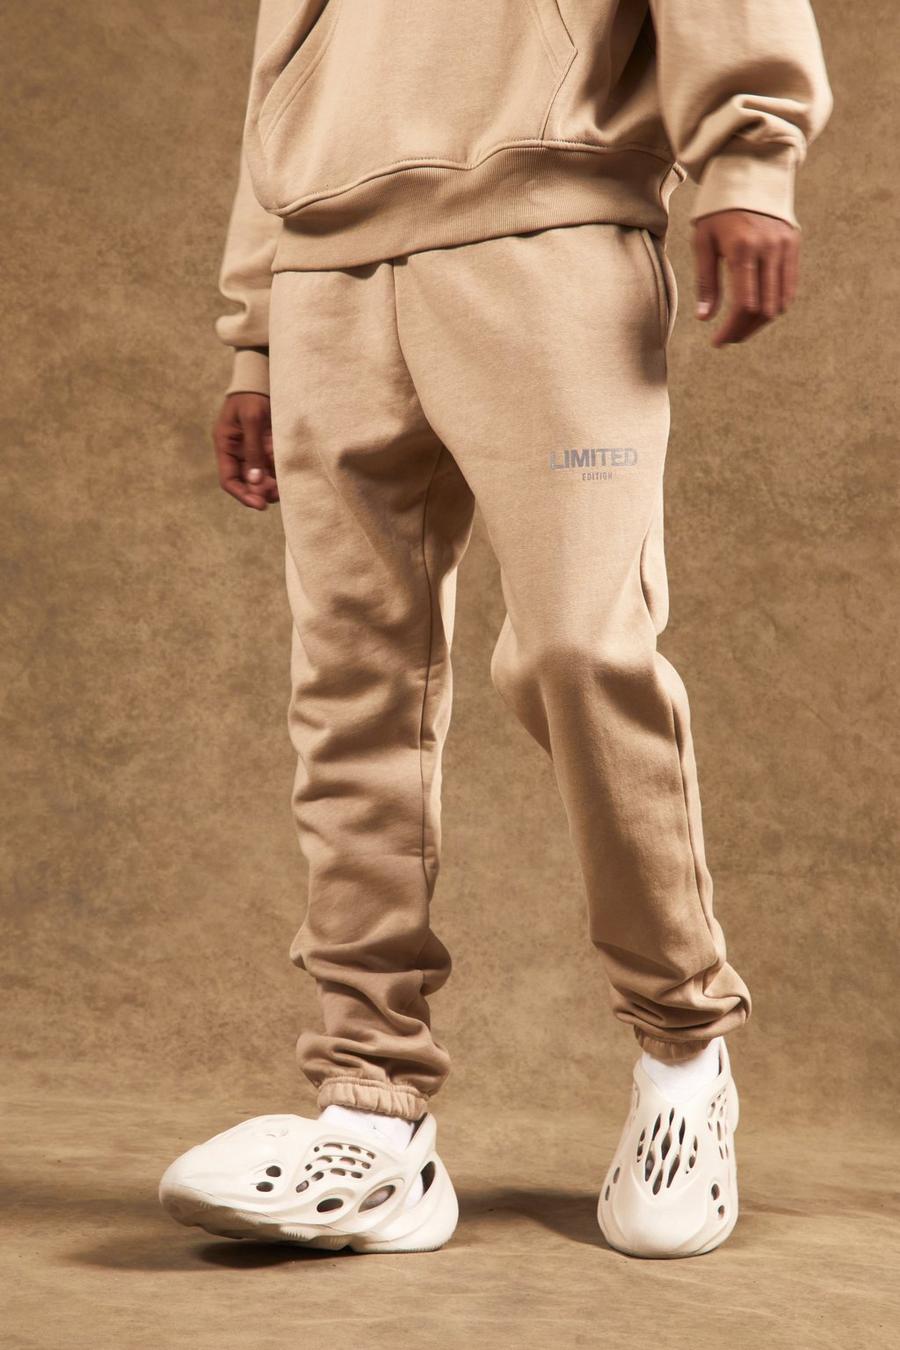 אפור חום beige מכנסי טרנינג עבים בגזרה רגילה עם כיתוב Limited